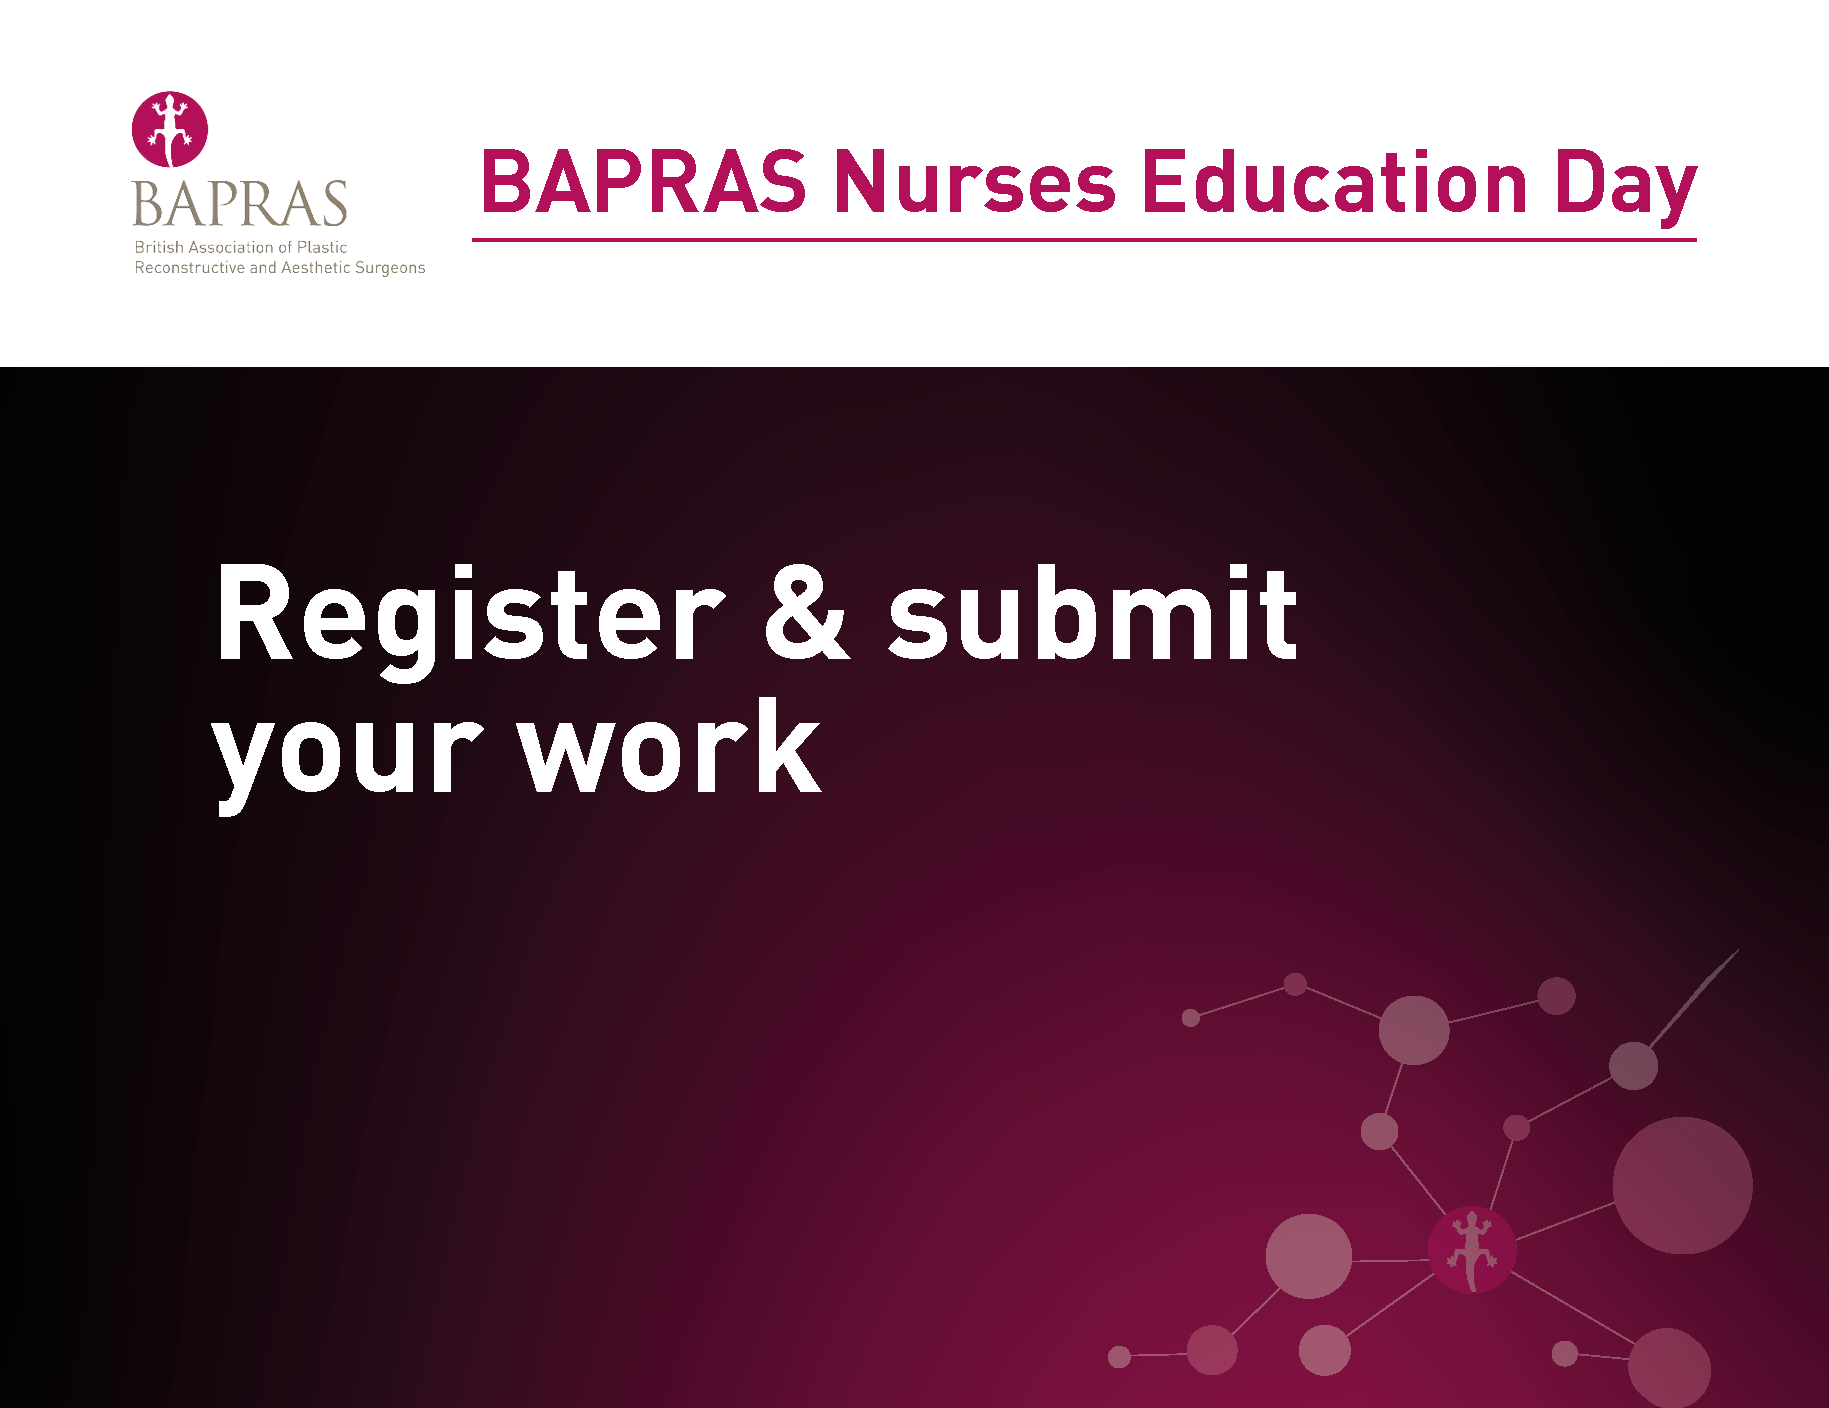 BAPRAS Nurses Education Day 